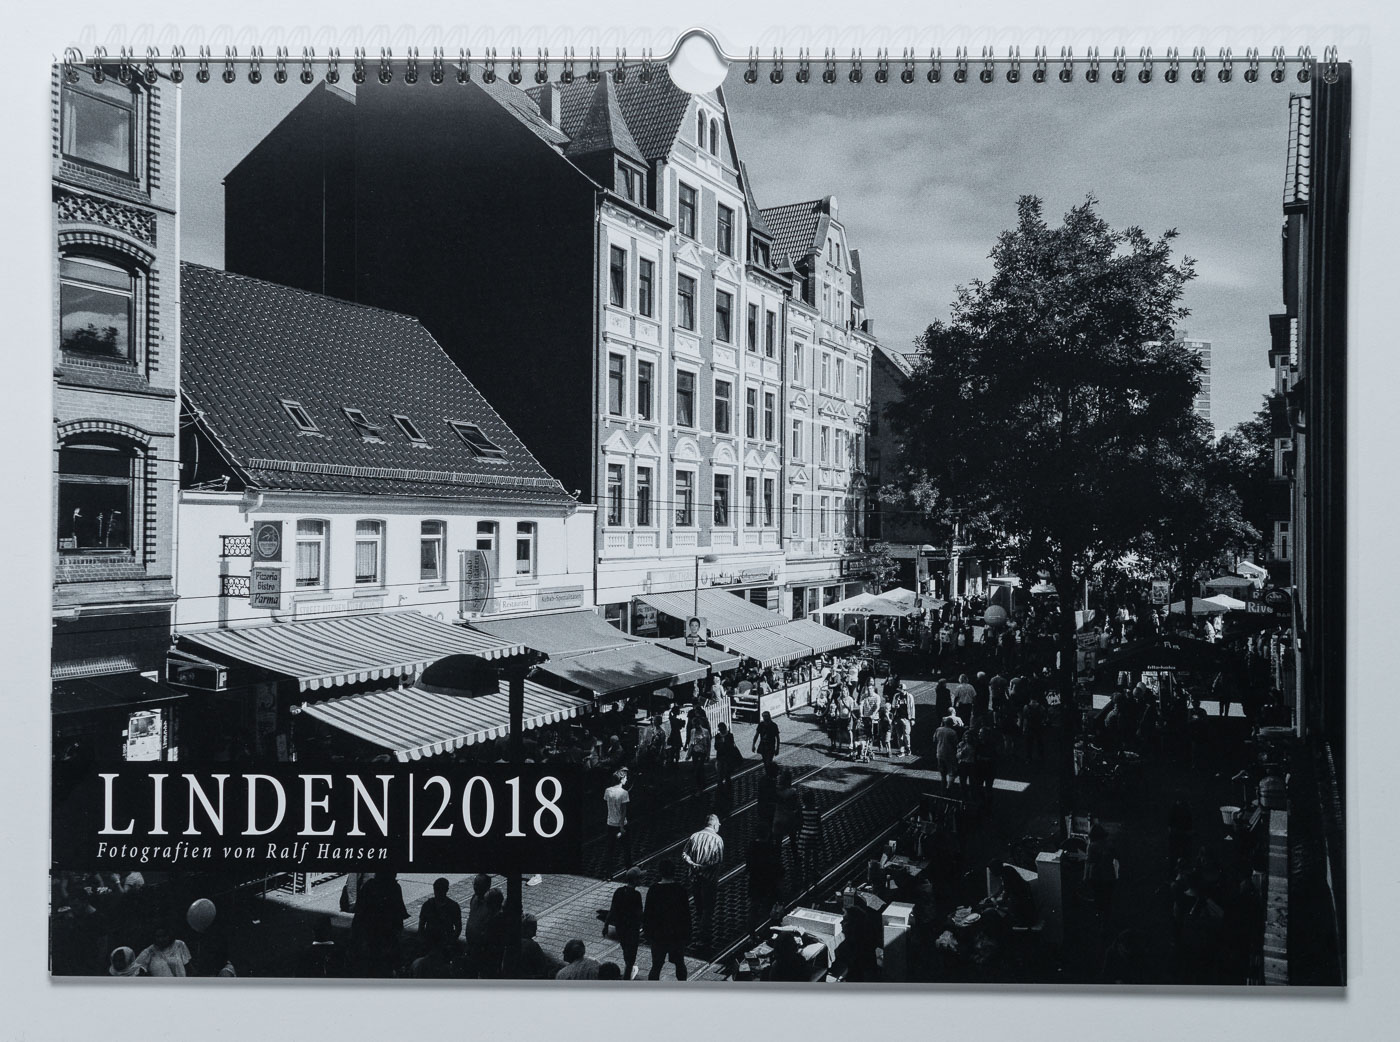 Lindenkalender LINDEN 2018